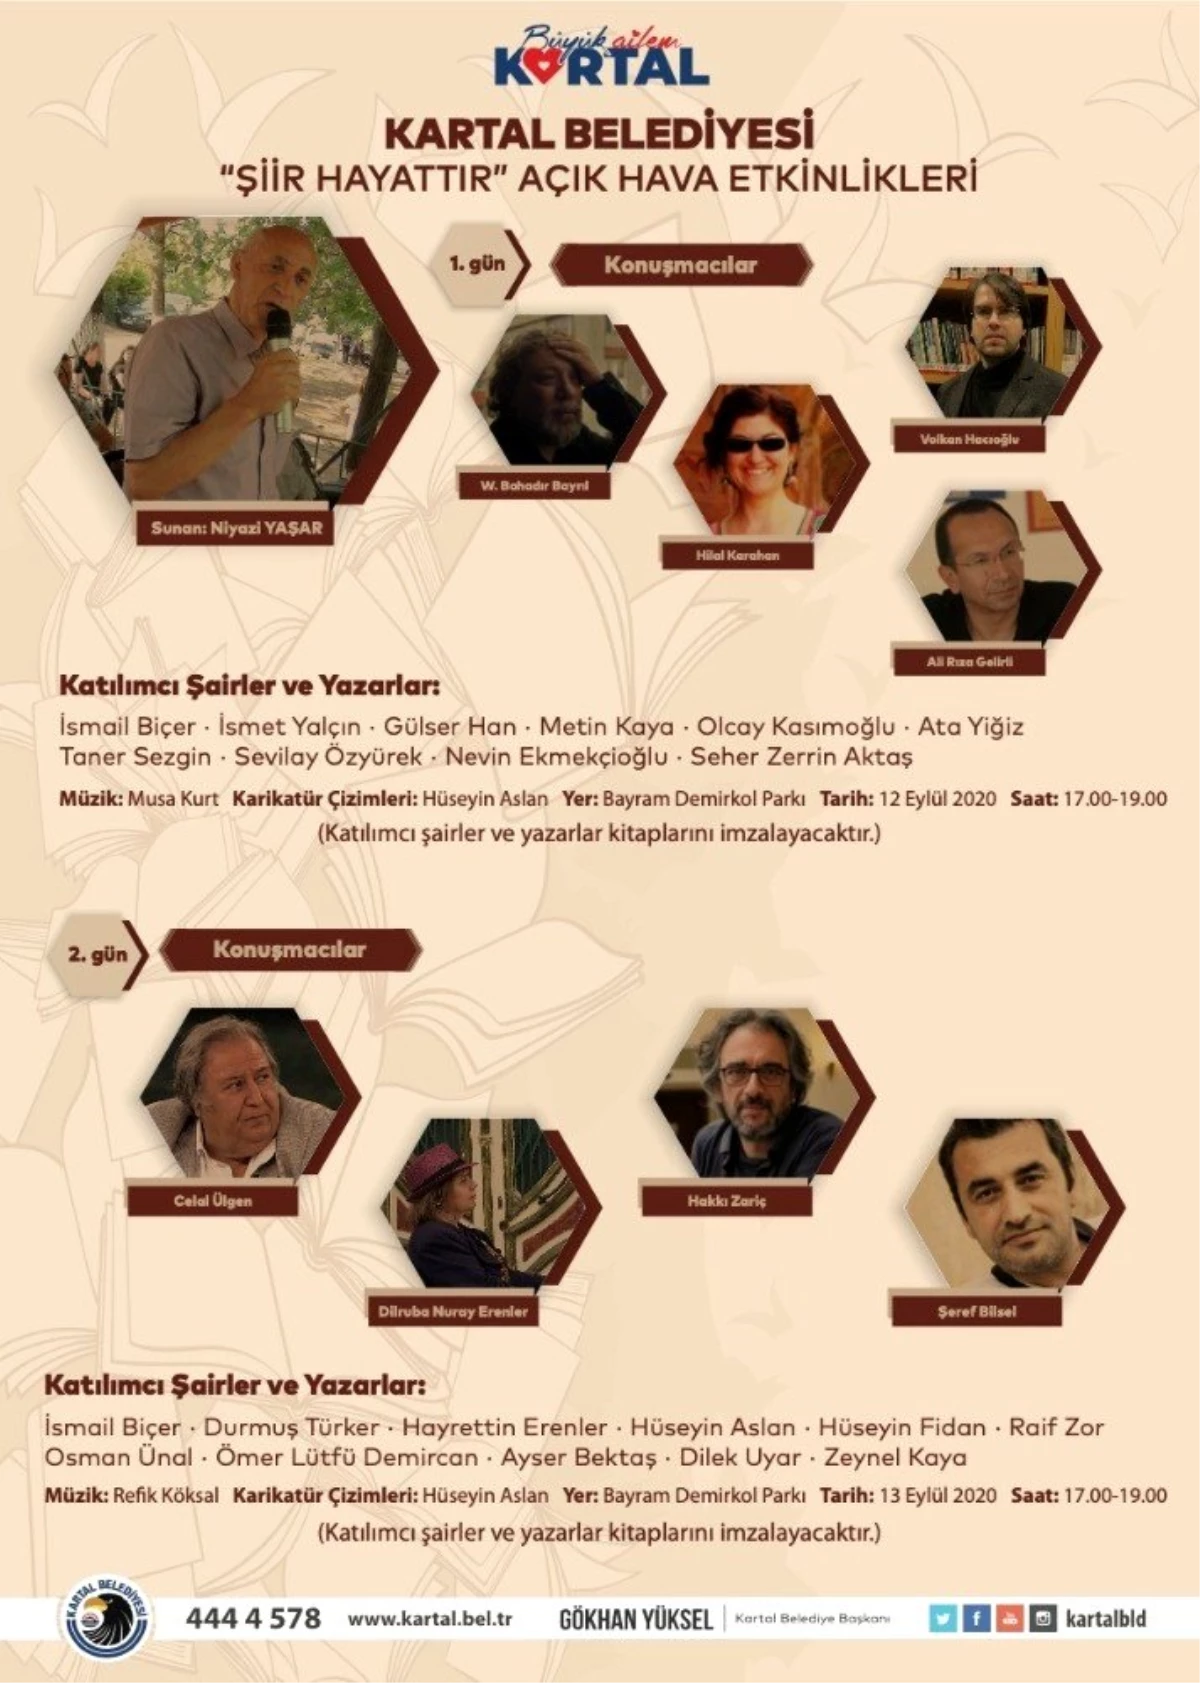 Kartal Belediyesi "Şiir Hayattır" etkinliği ile şair ve yazarları ağırlıyor